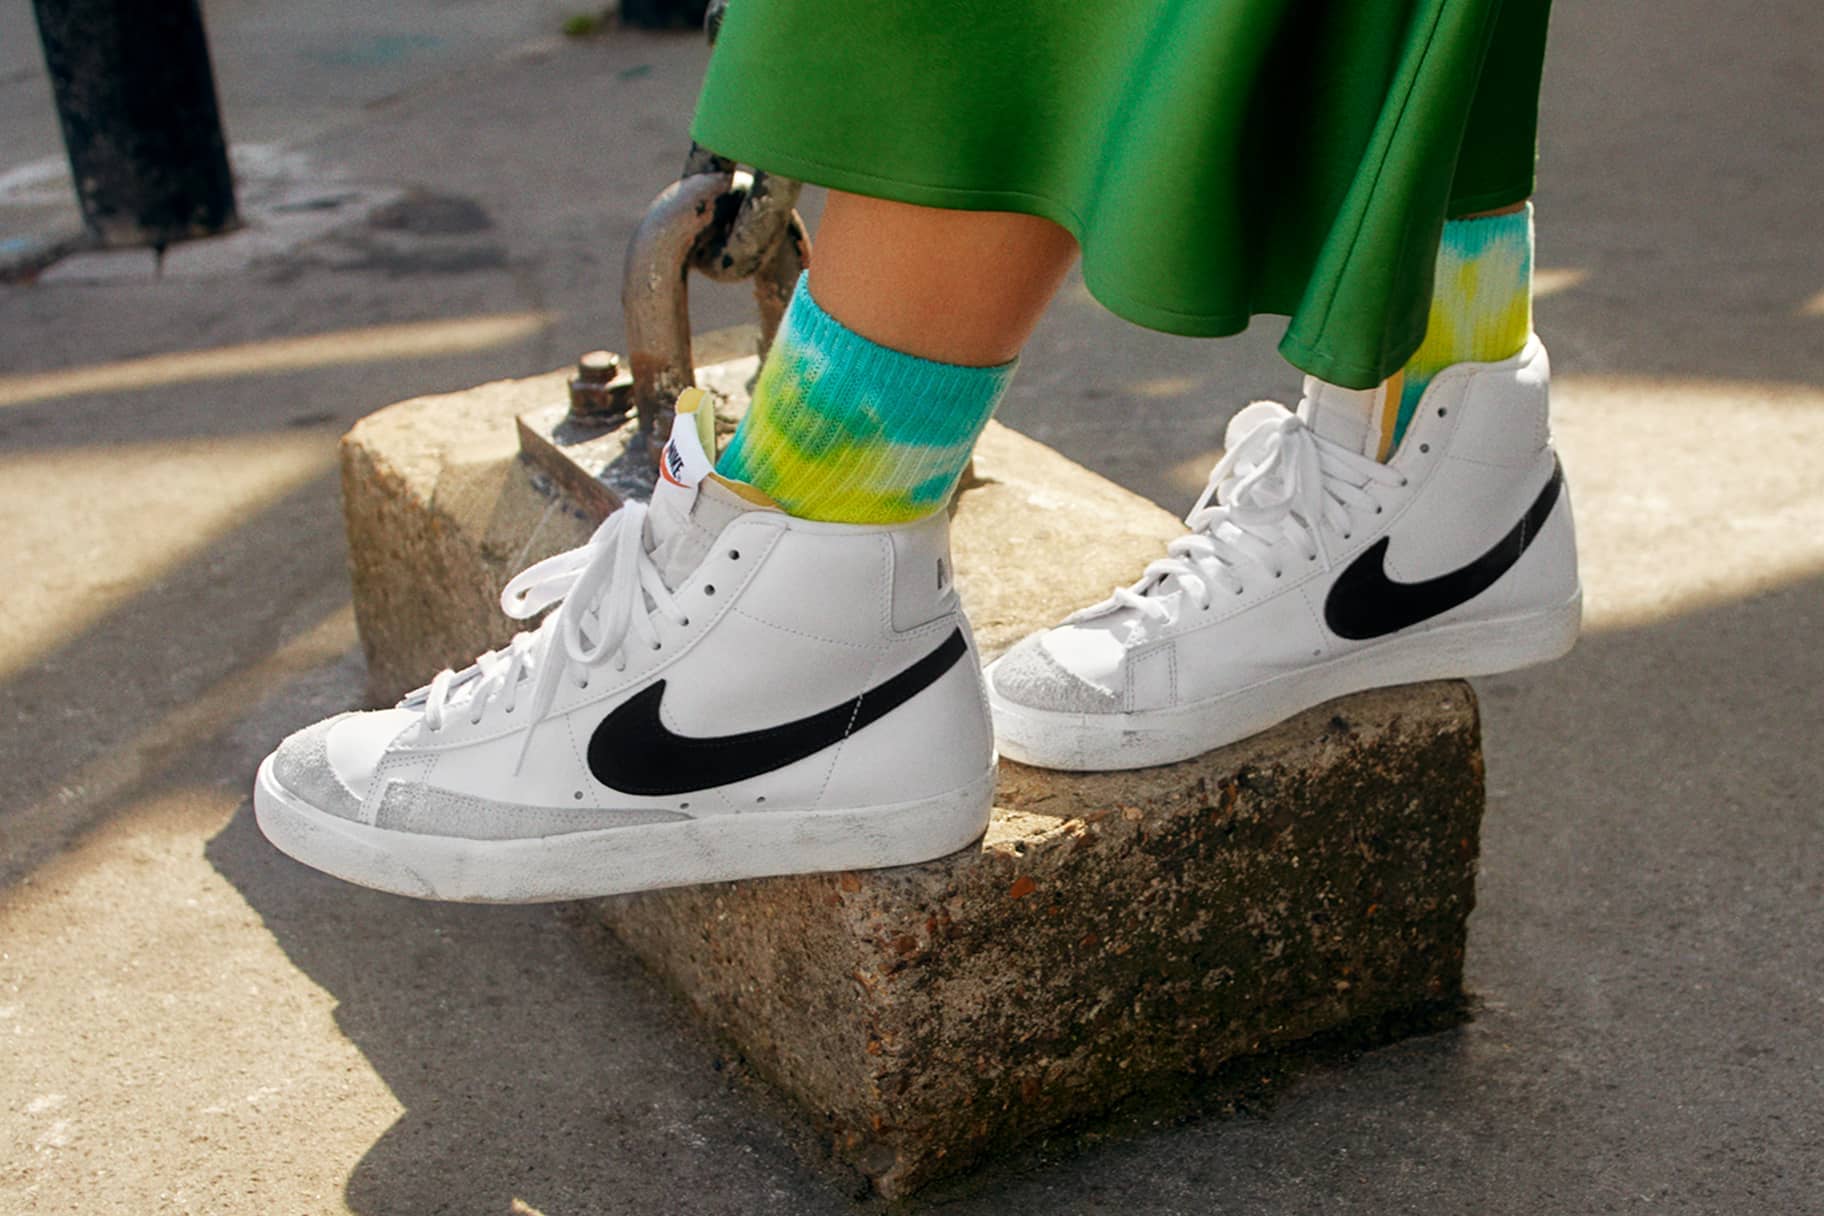 Deudor reserva Irradiar El mejor calzado informal de Nike para usar todos los días. Nike